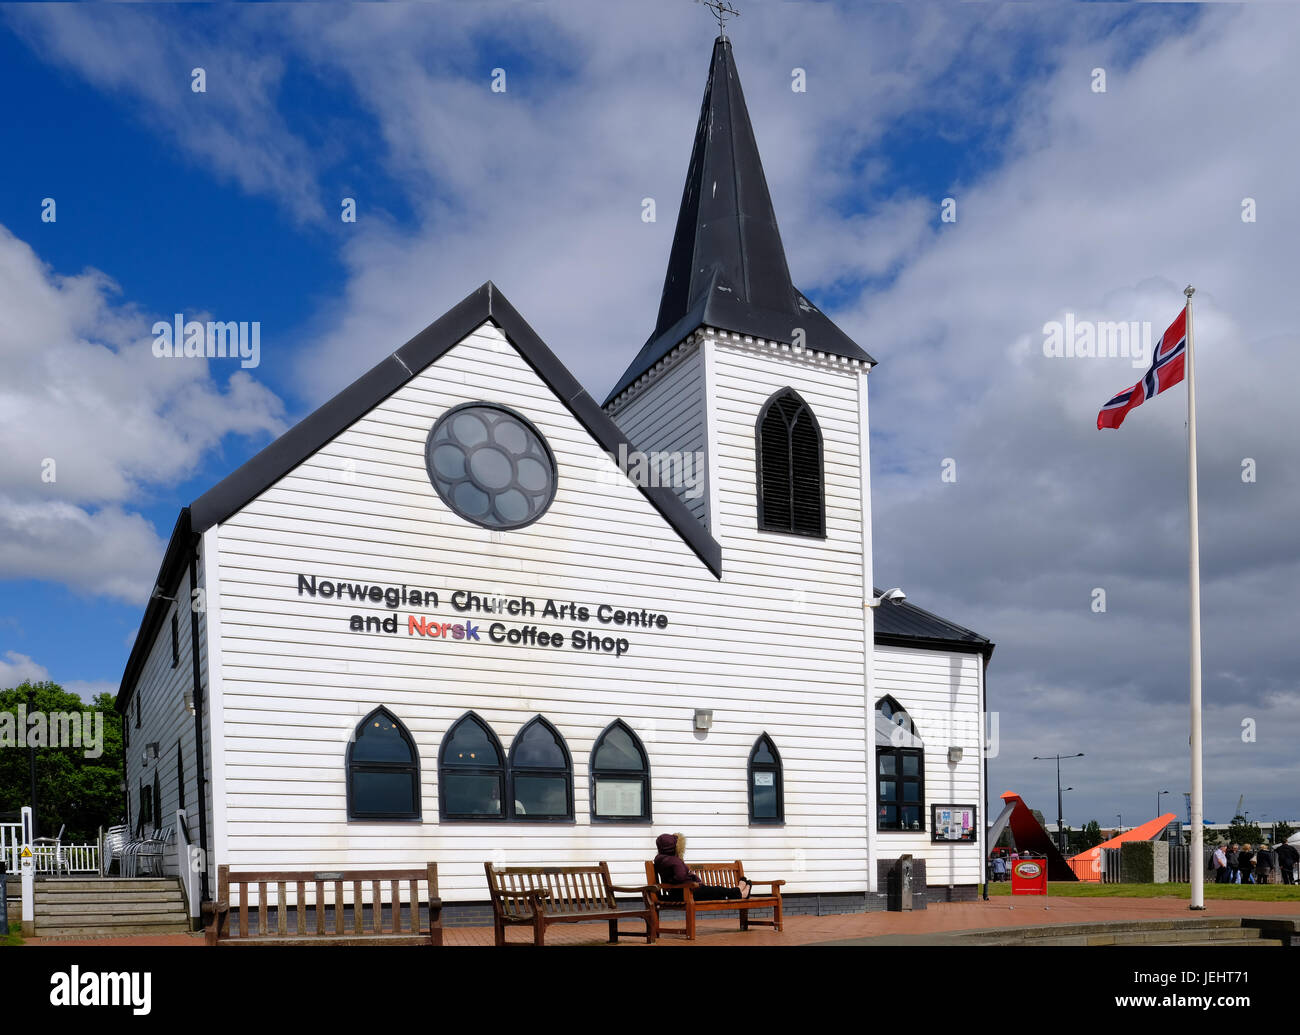 Bucht von Cardiff, Cardiff, Wales - 20. Mai 2017: Norwegische Kirche und Kunst Zentrum.  Norwegische Flagge. Stockfoto